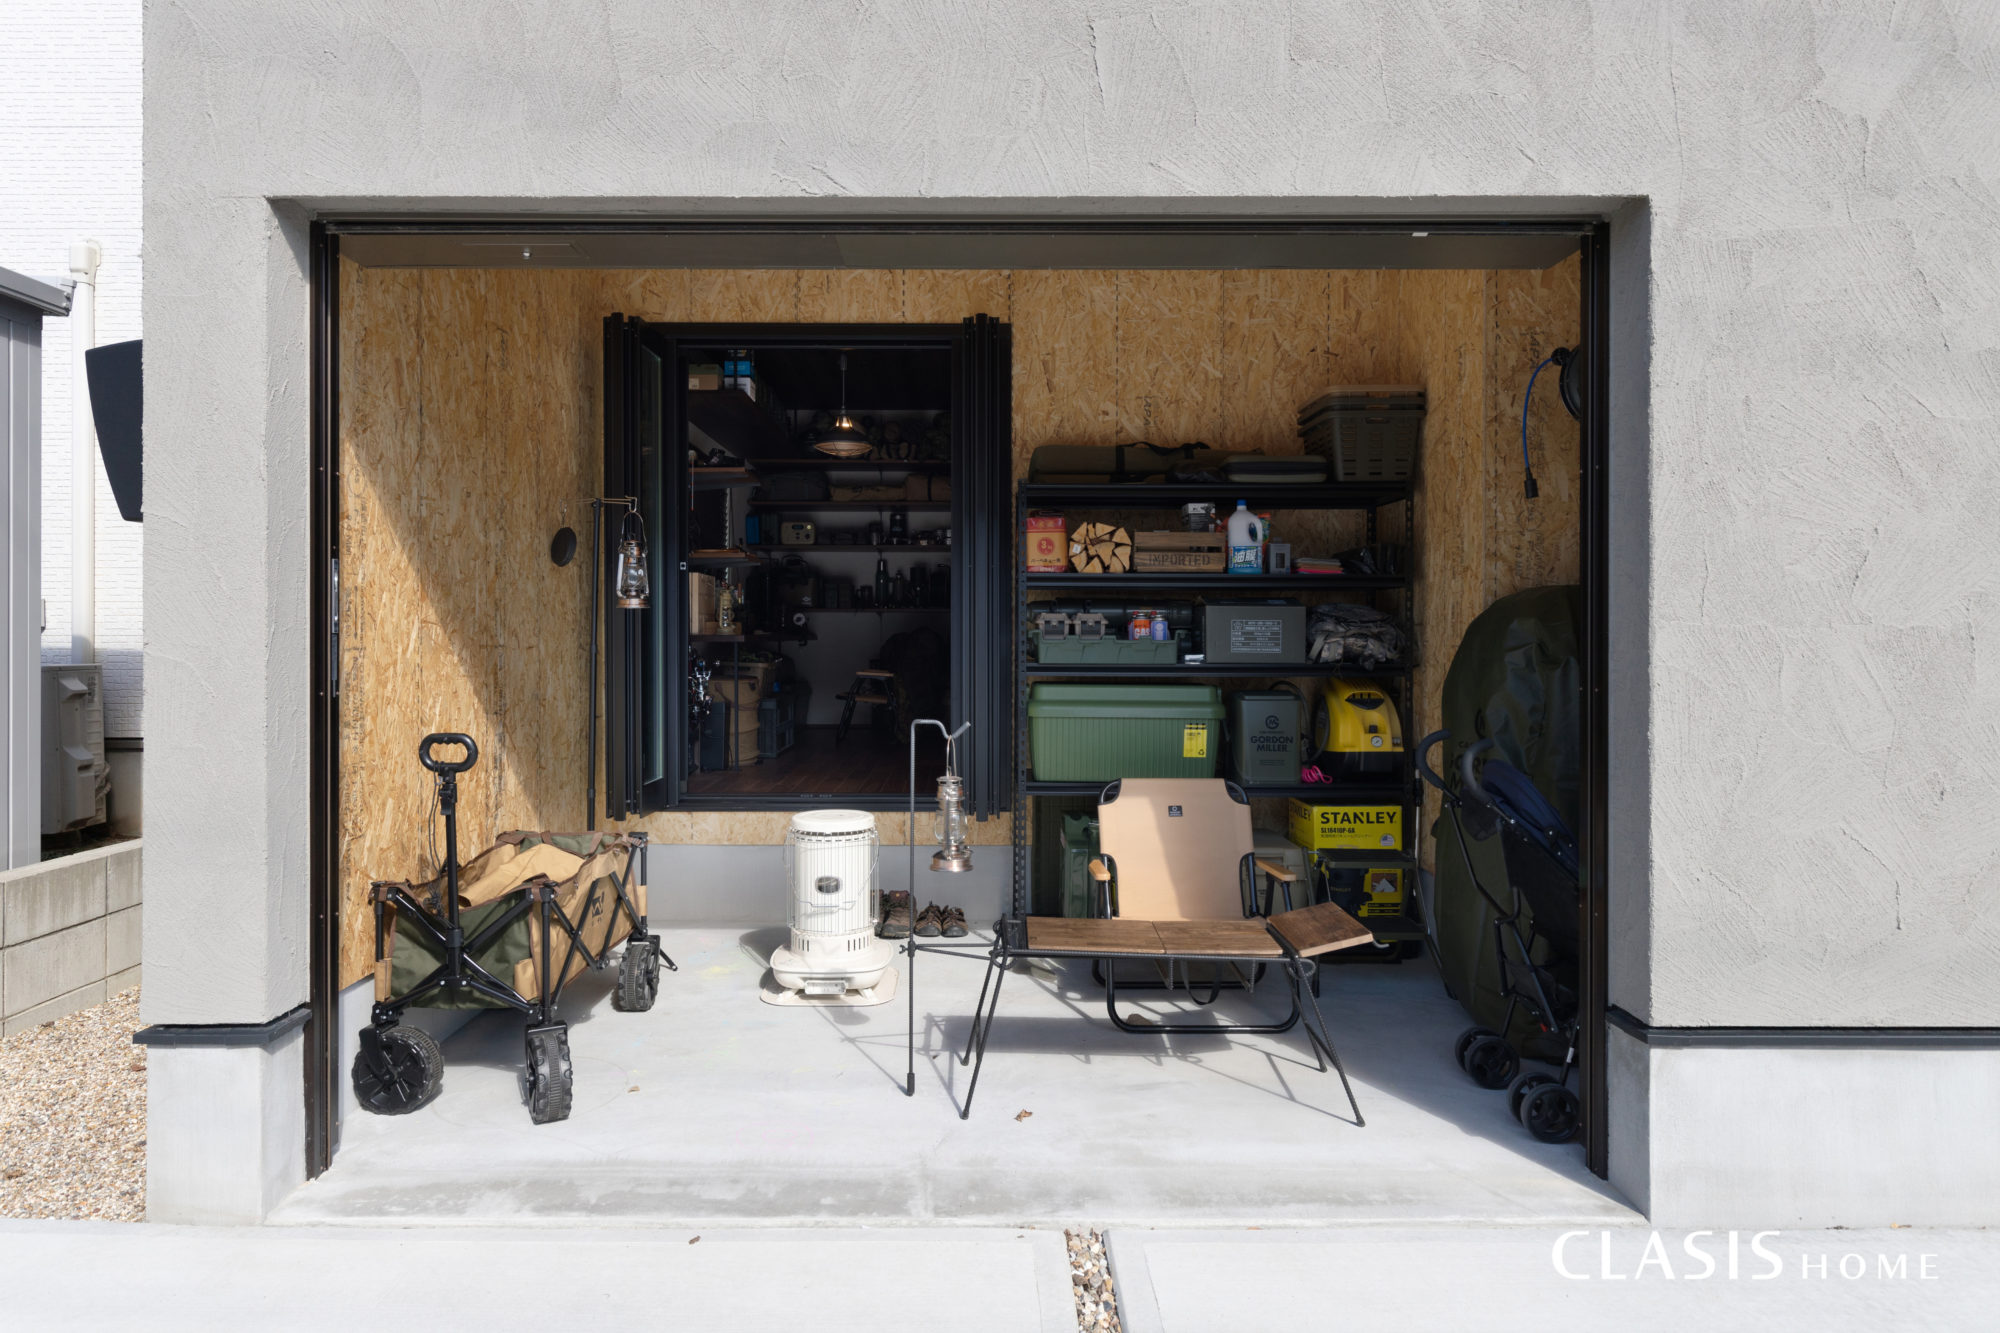 アウトドア用品がたくさん収納できるガレージ。